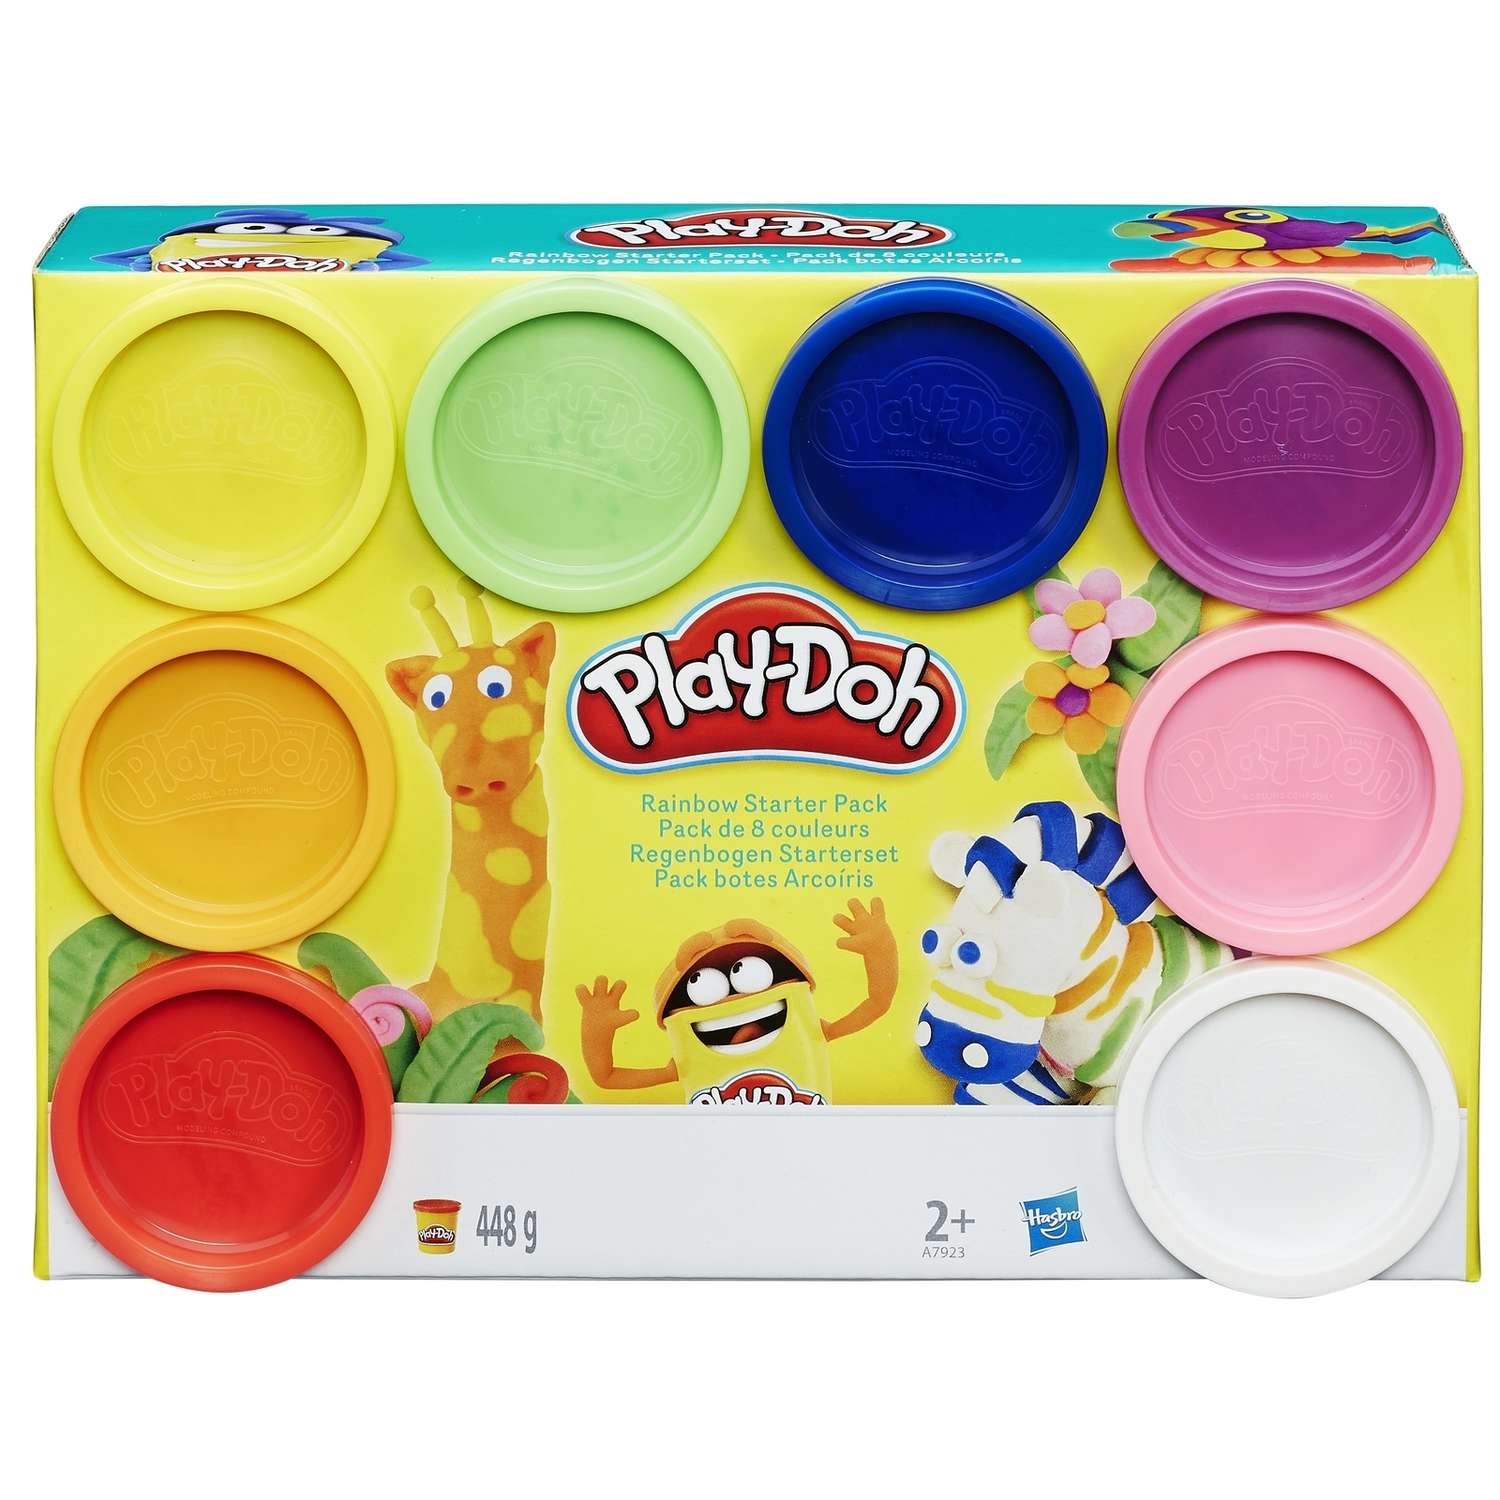 Пластилин Play-Doh (набор из 8 банок) 448 грамм - фото 1